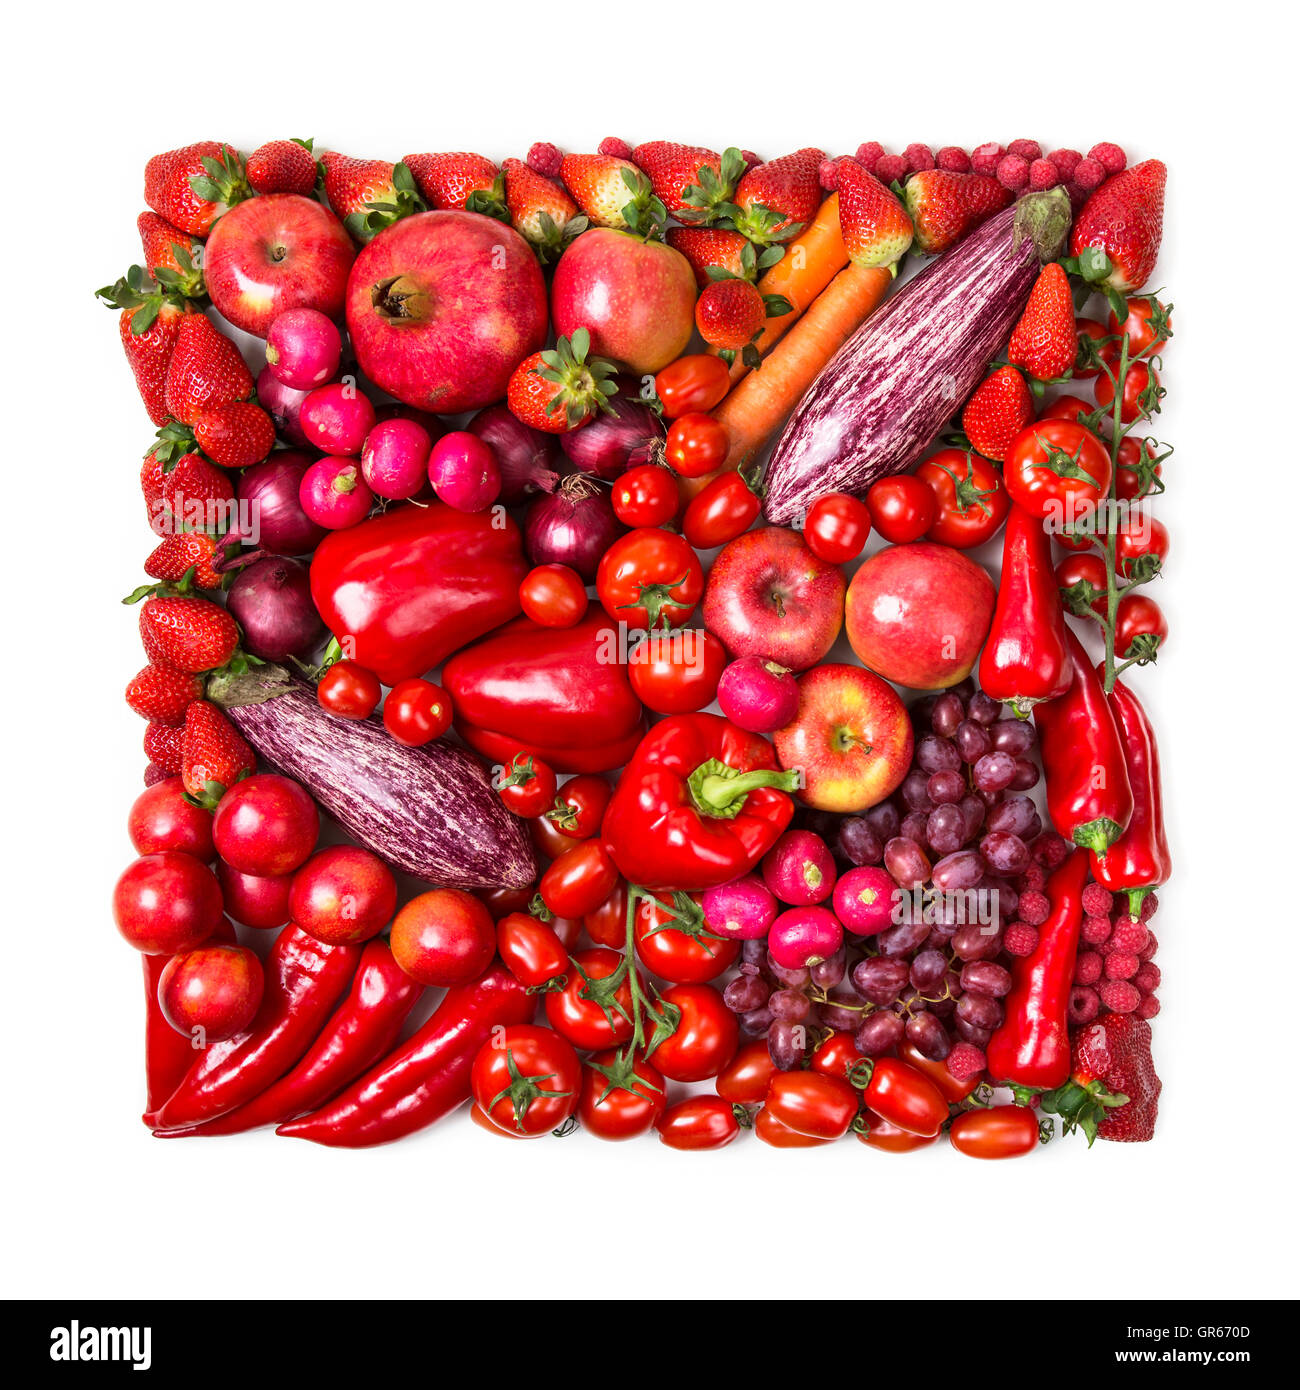 Carré de fruits rouges et légumes frais isolé sur fond blanc Banque D'Images